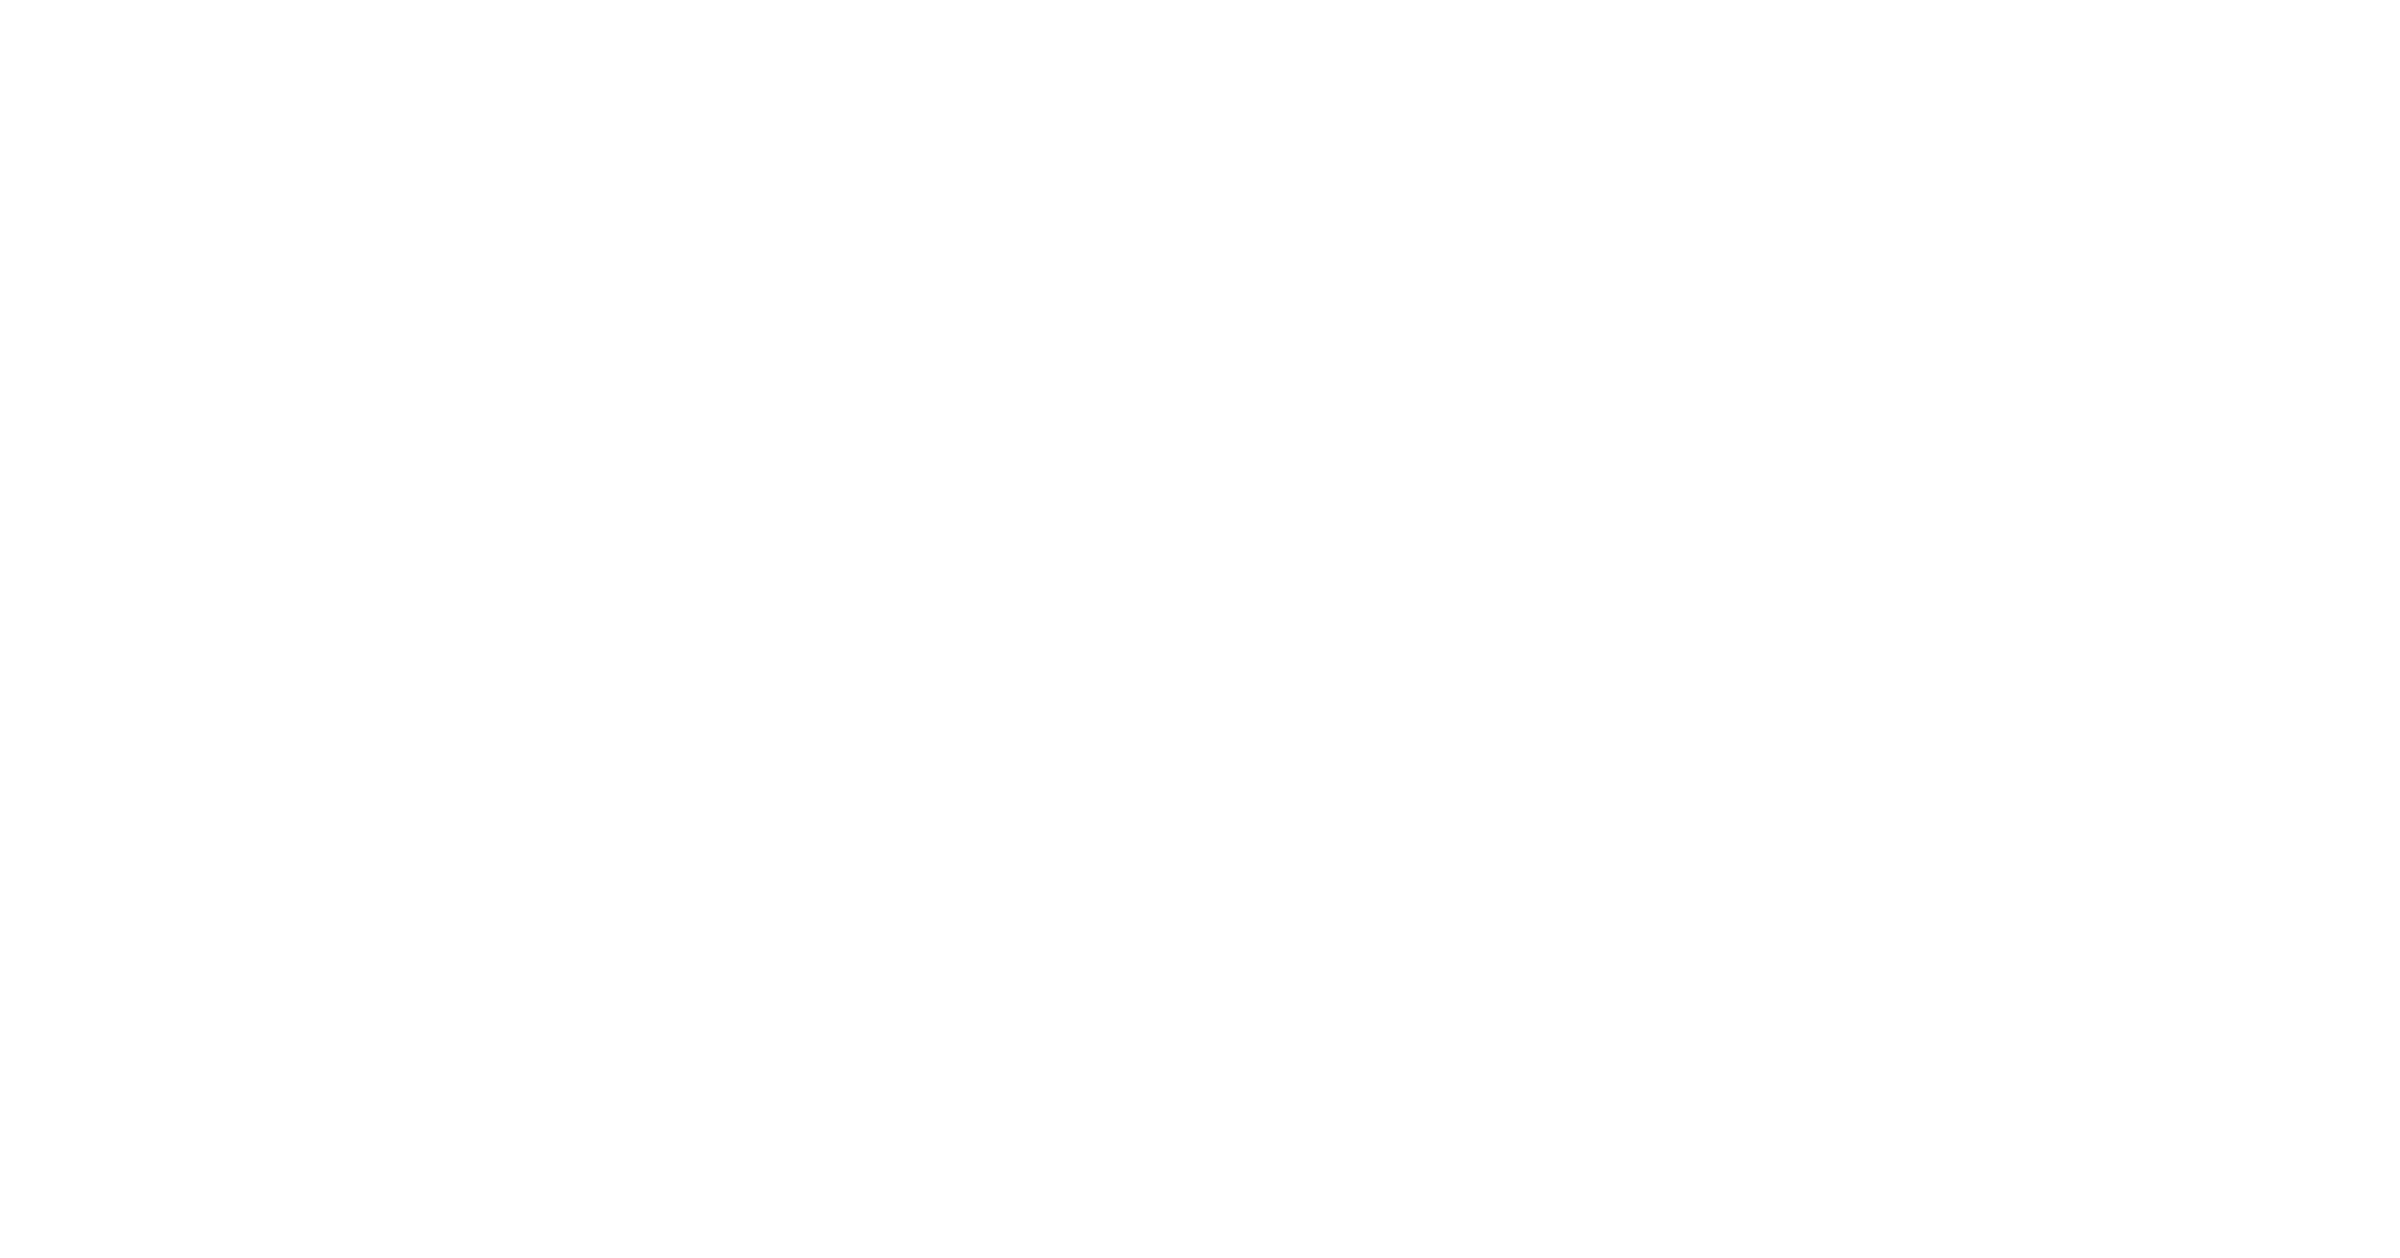 Next Big Idea Club